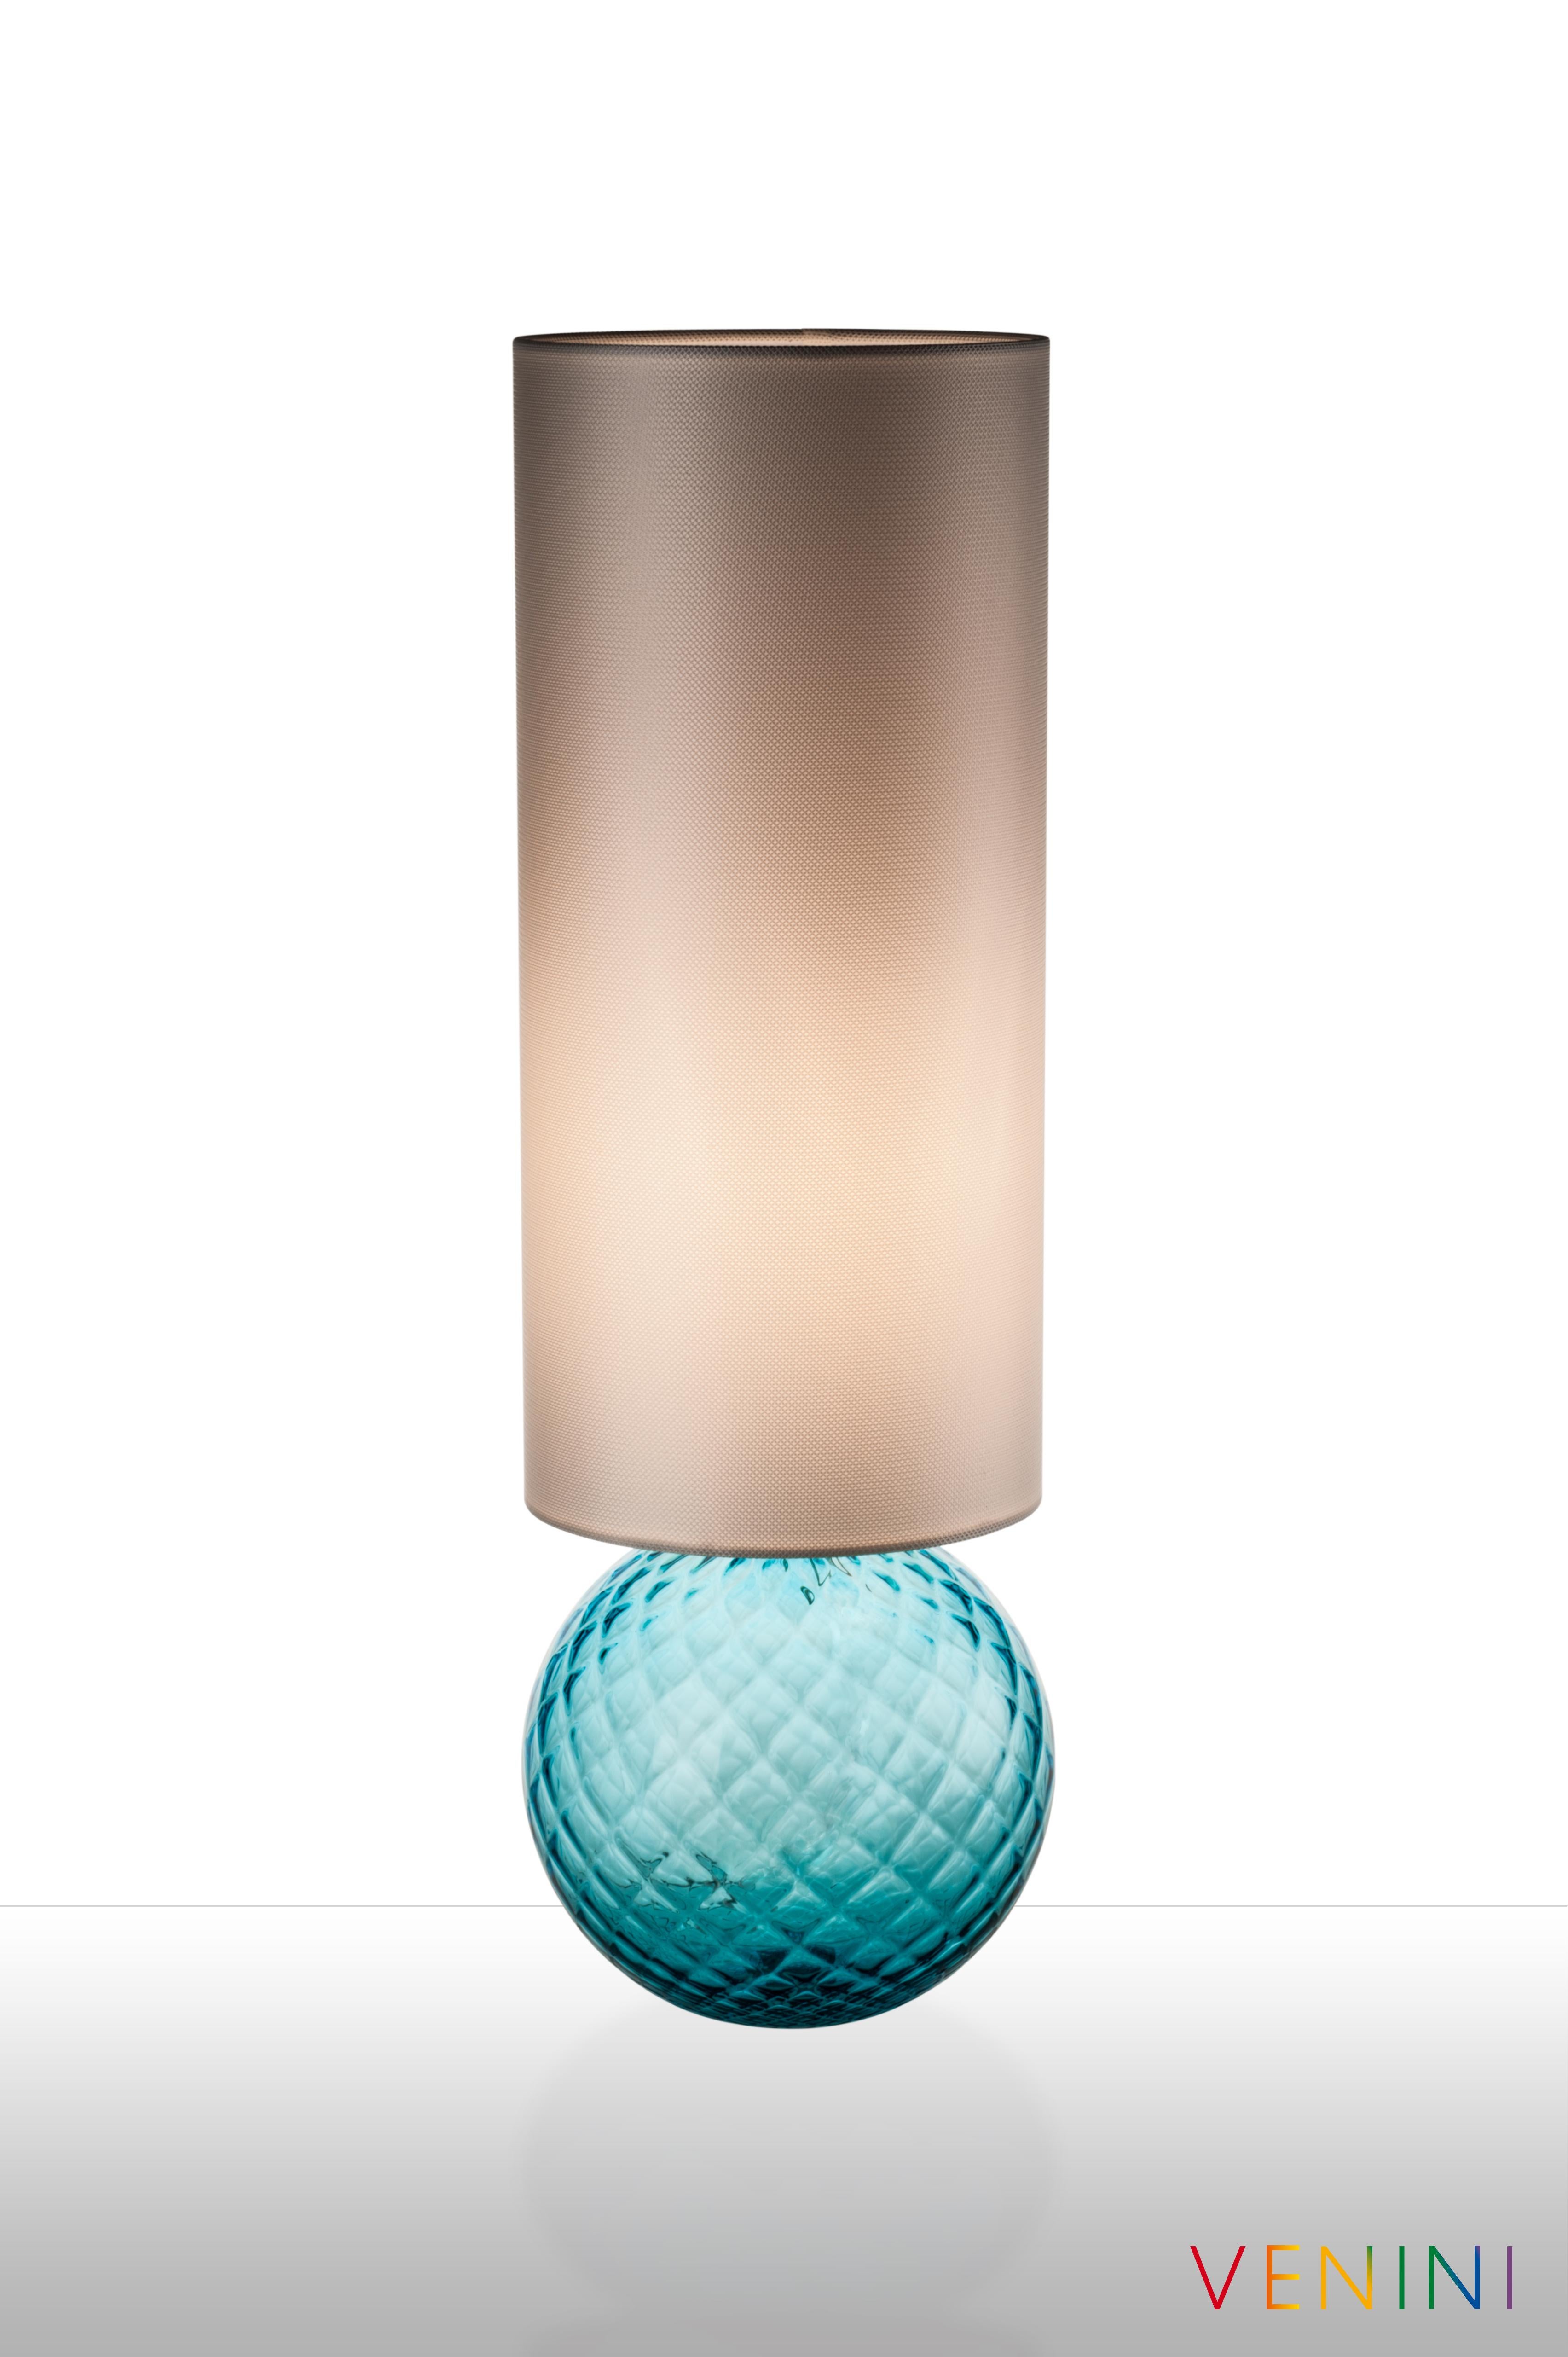 La lampe de table Balloton, conçue et fabriquée par Venini, est disponible en trois couleurs différentes et présente un corps en verre soufflé à la main avec un abat-jour en tissu. Utilisation intérieure uniquement.

Dimensions : Ø 21,5 cm, H 66